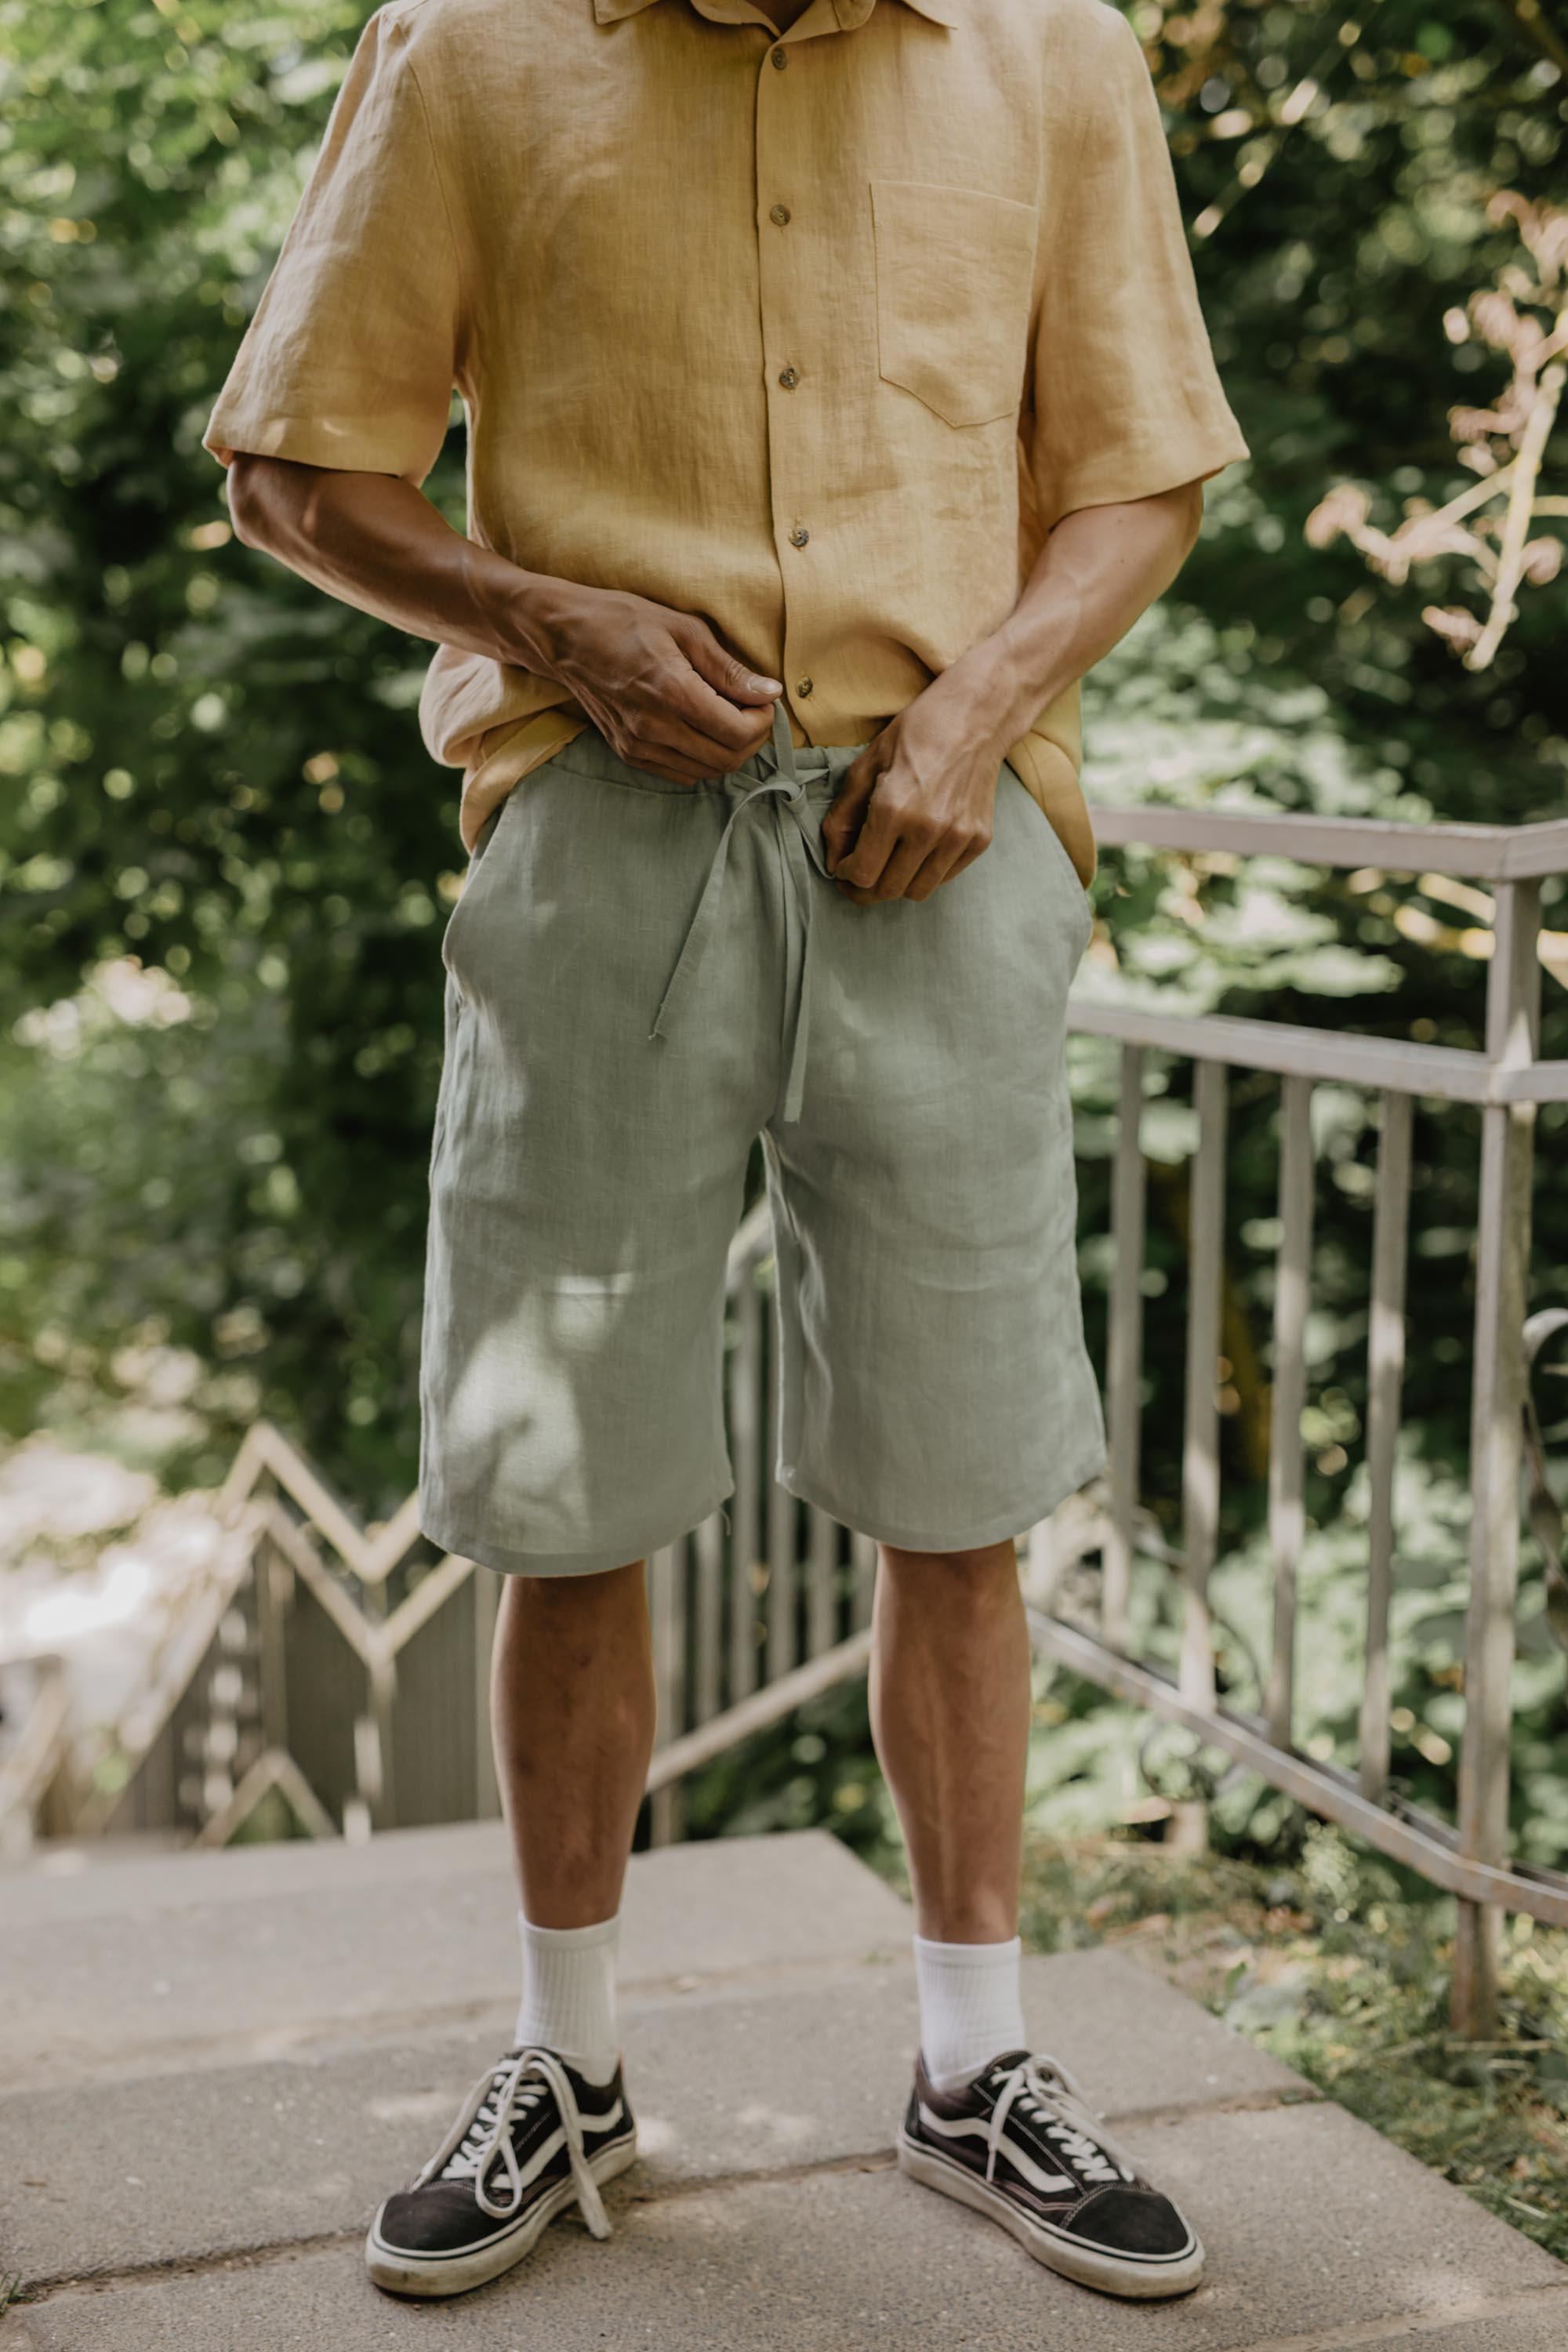 Man Adjusting Sage Green Linen Shorts